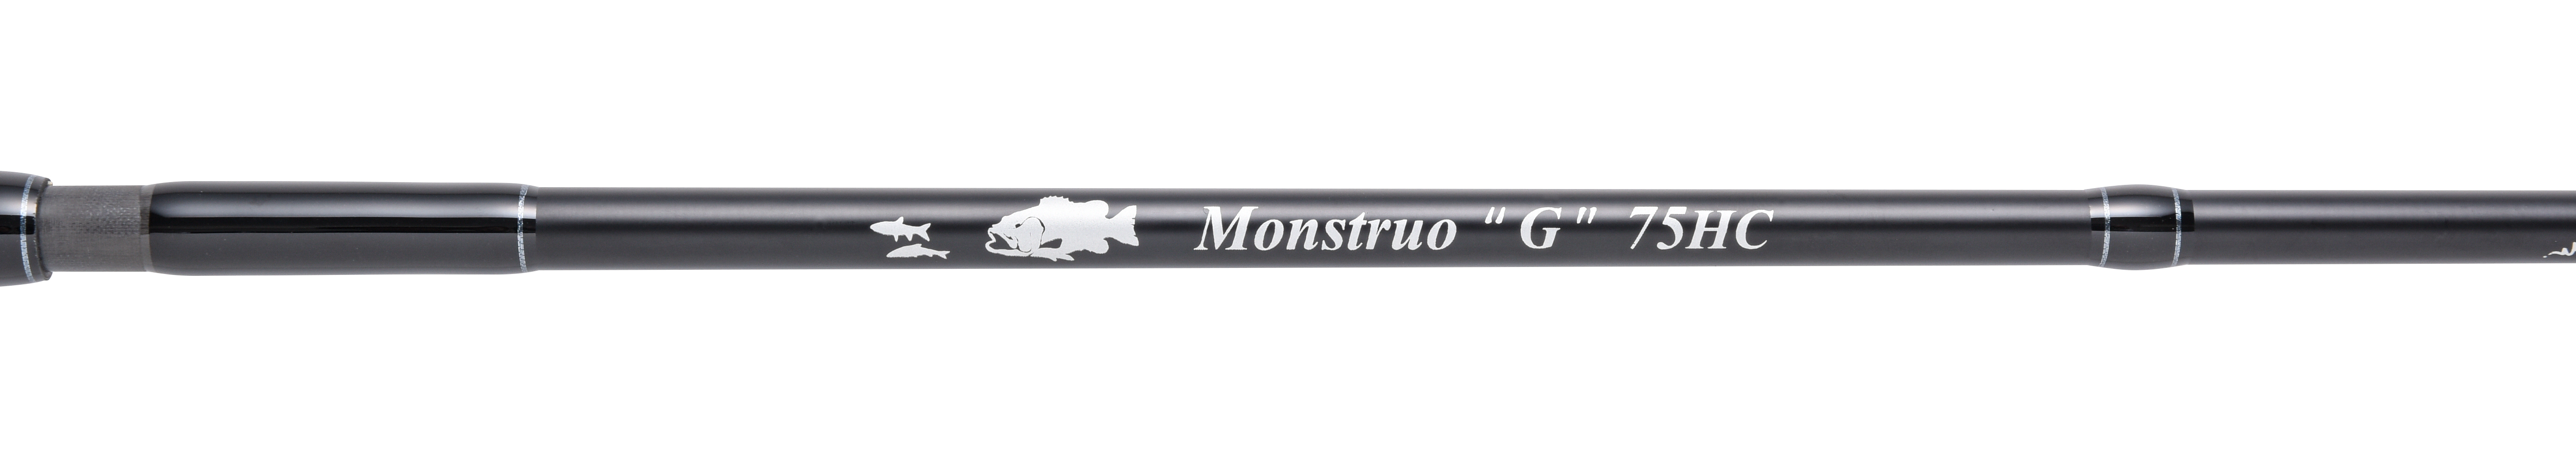 Monstruo”G” 75HC | グリップ